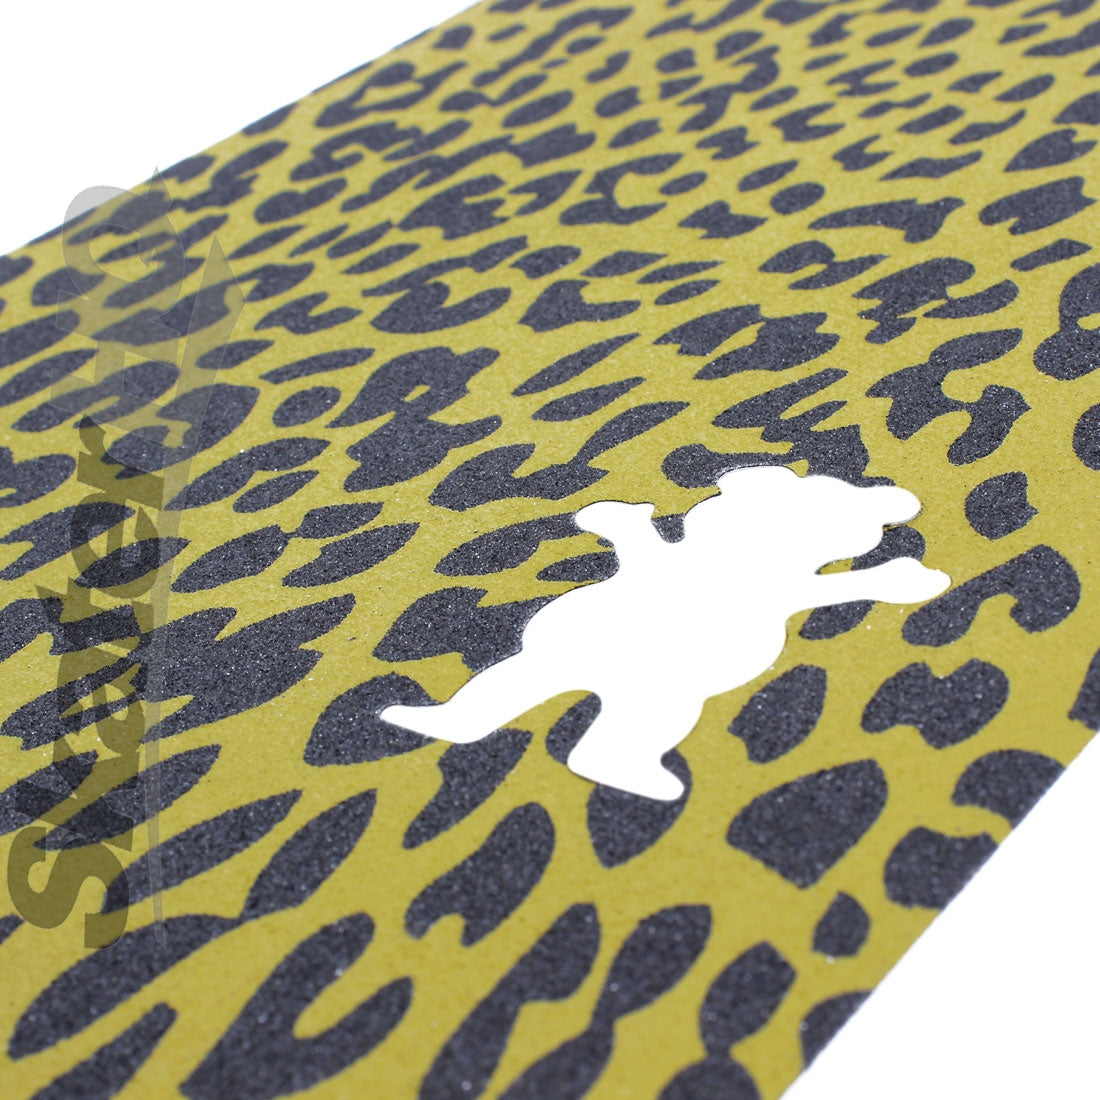 Grizzly Bear Cutout Griptape - Leopard Griptape